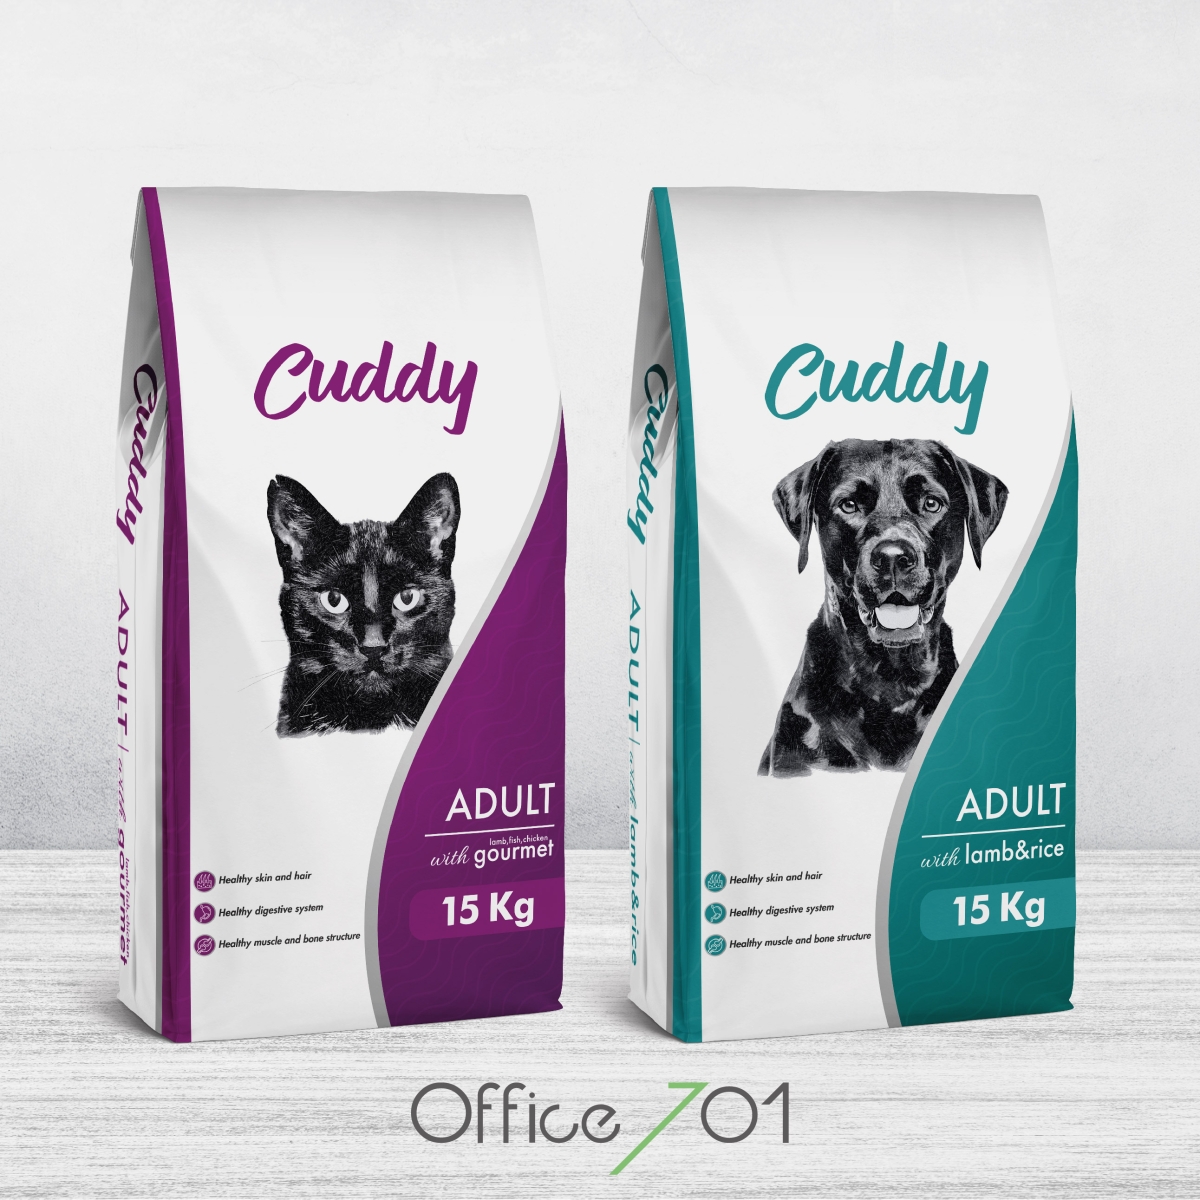 Office701 | Cuddy Mama Ambalaj Tasarımı